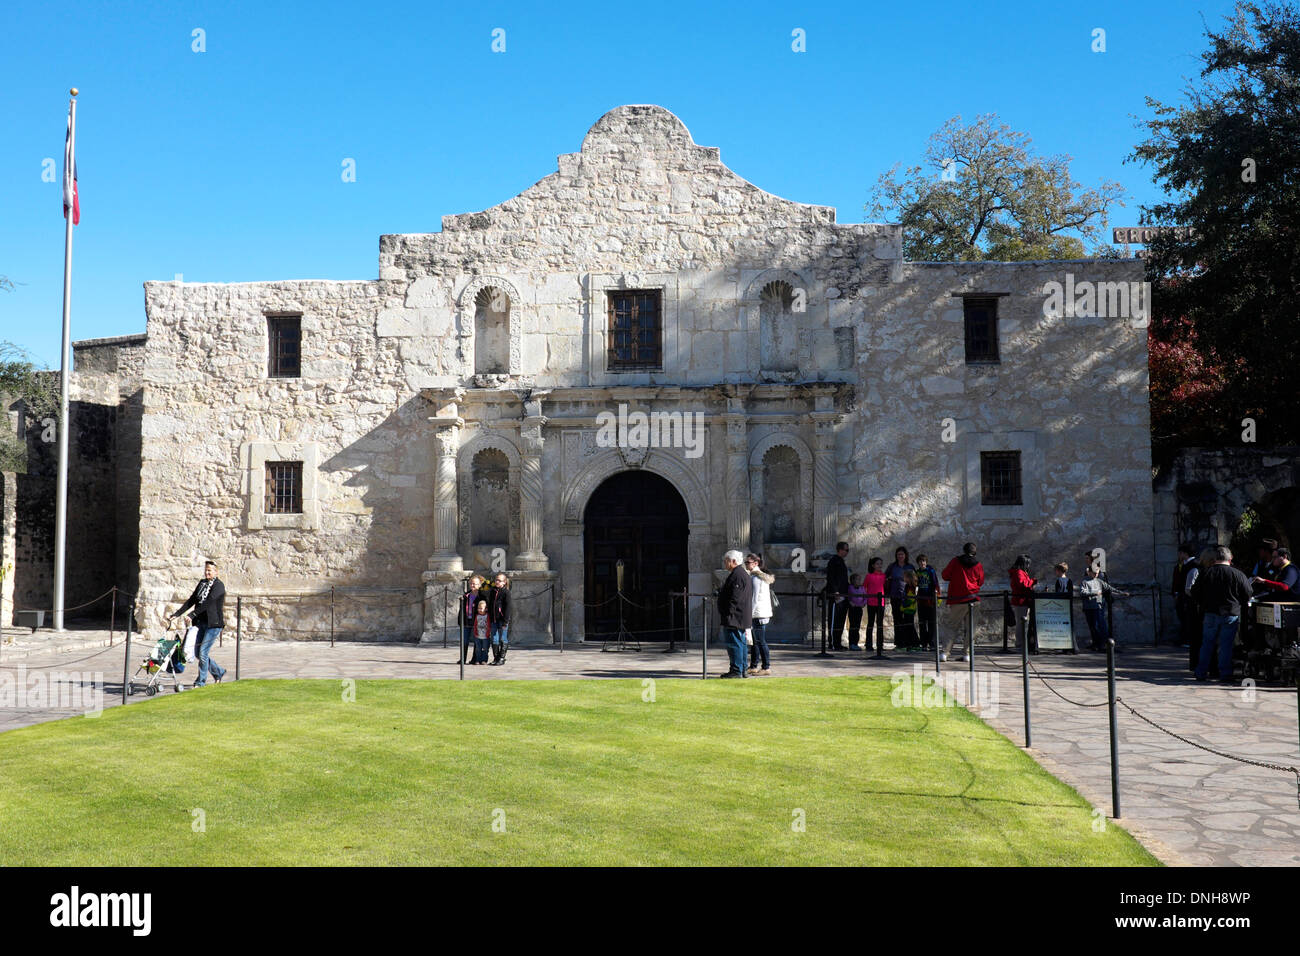 Tourists at the Alamo in San Antonio, Texas Stock Photo